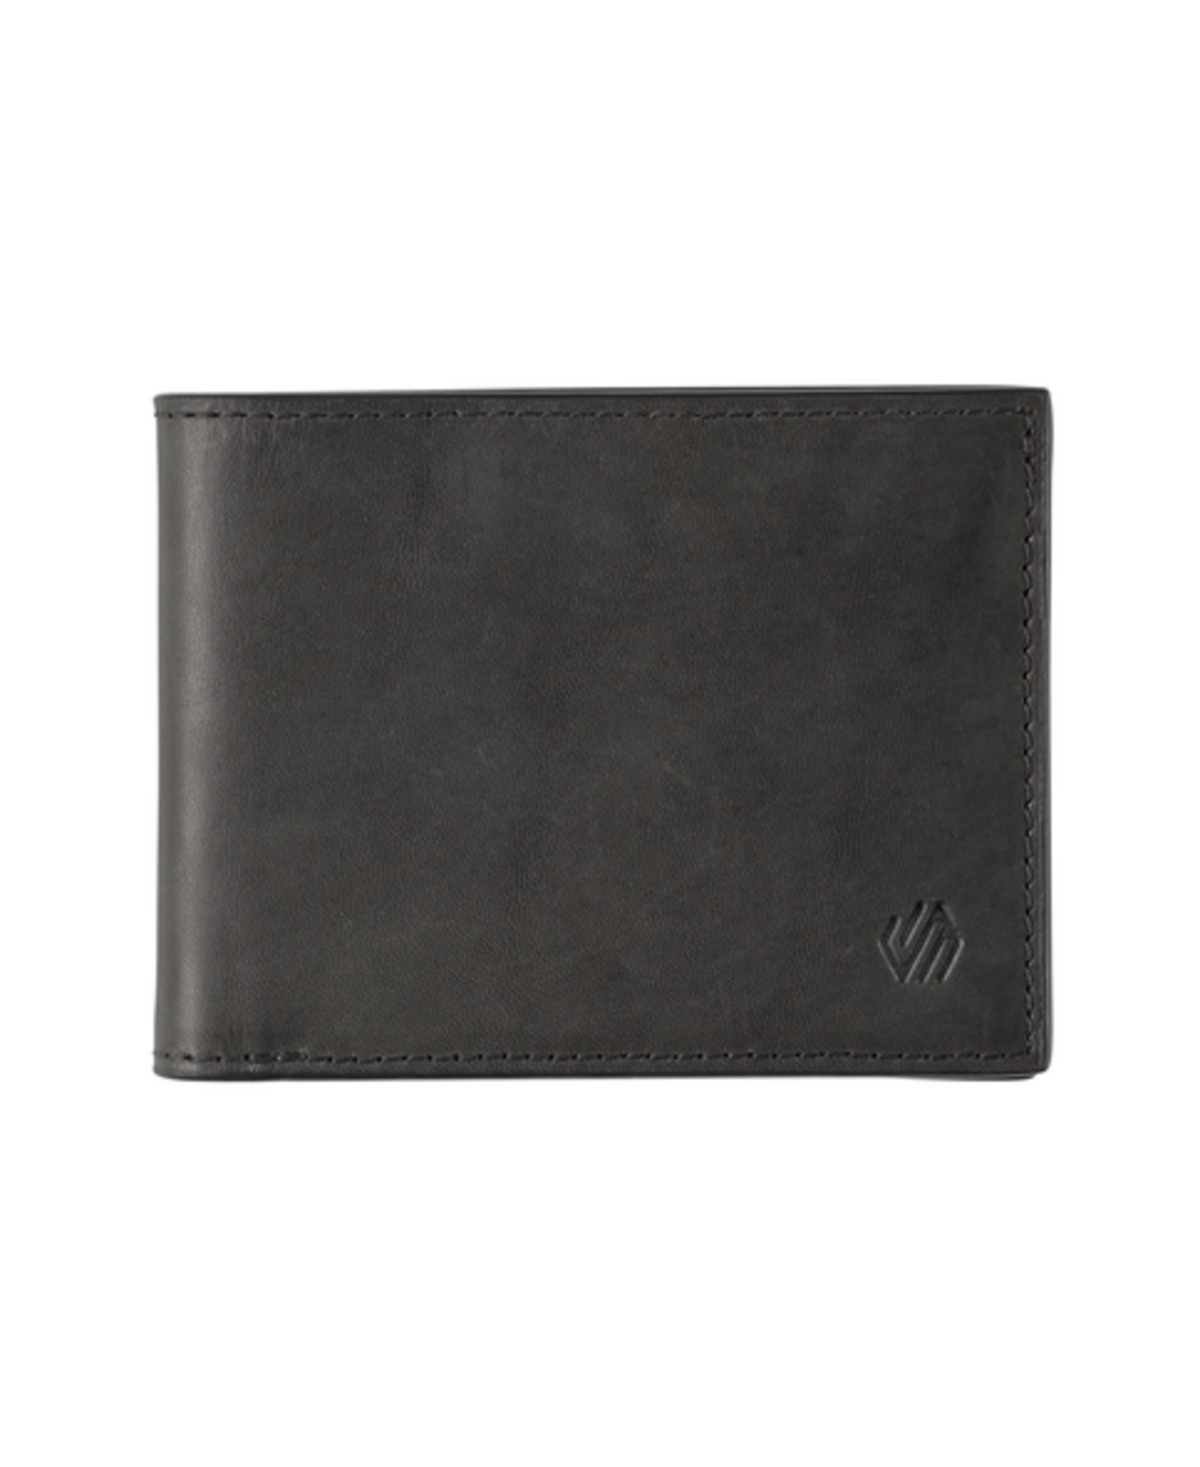 Johnston & Murphy Men's Rhodes 2-in-1 Billfold Wallet In Black Full Grain Leather